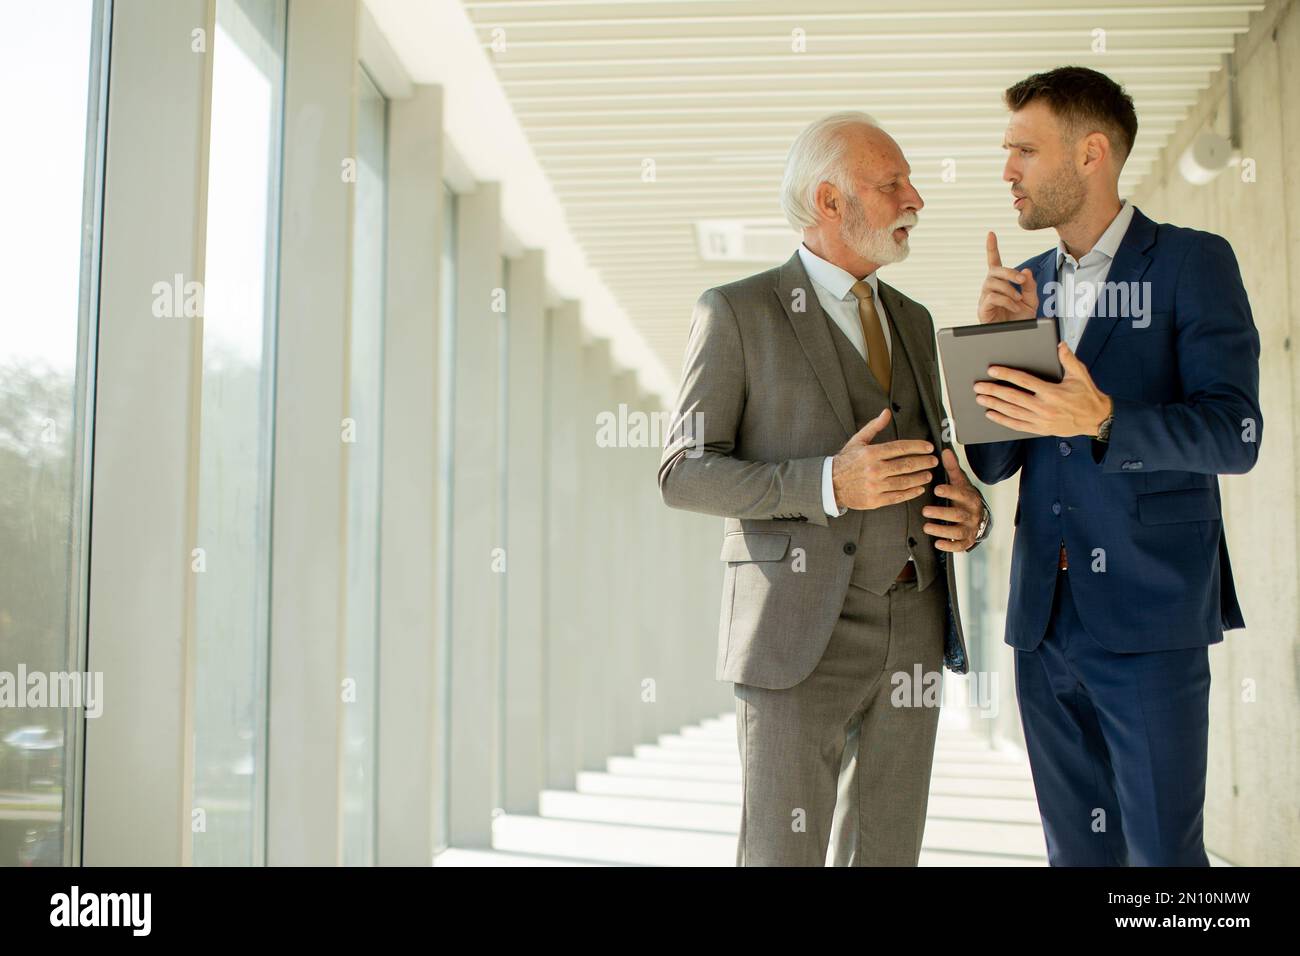 Un jeune homme d'affaires et un homme d'affaires senior descendent dans le couloir d'un bureau, profondément dans la conversation. Ils sont tous deux habillés professionnellement, reflétant leur acum d'affaires Banque D'Images